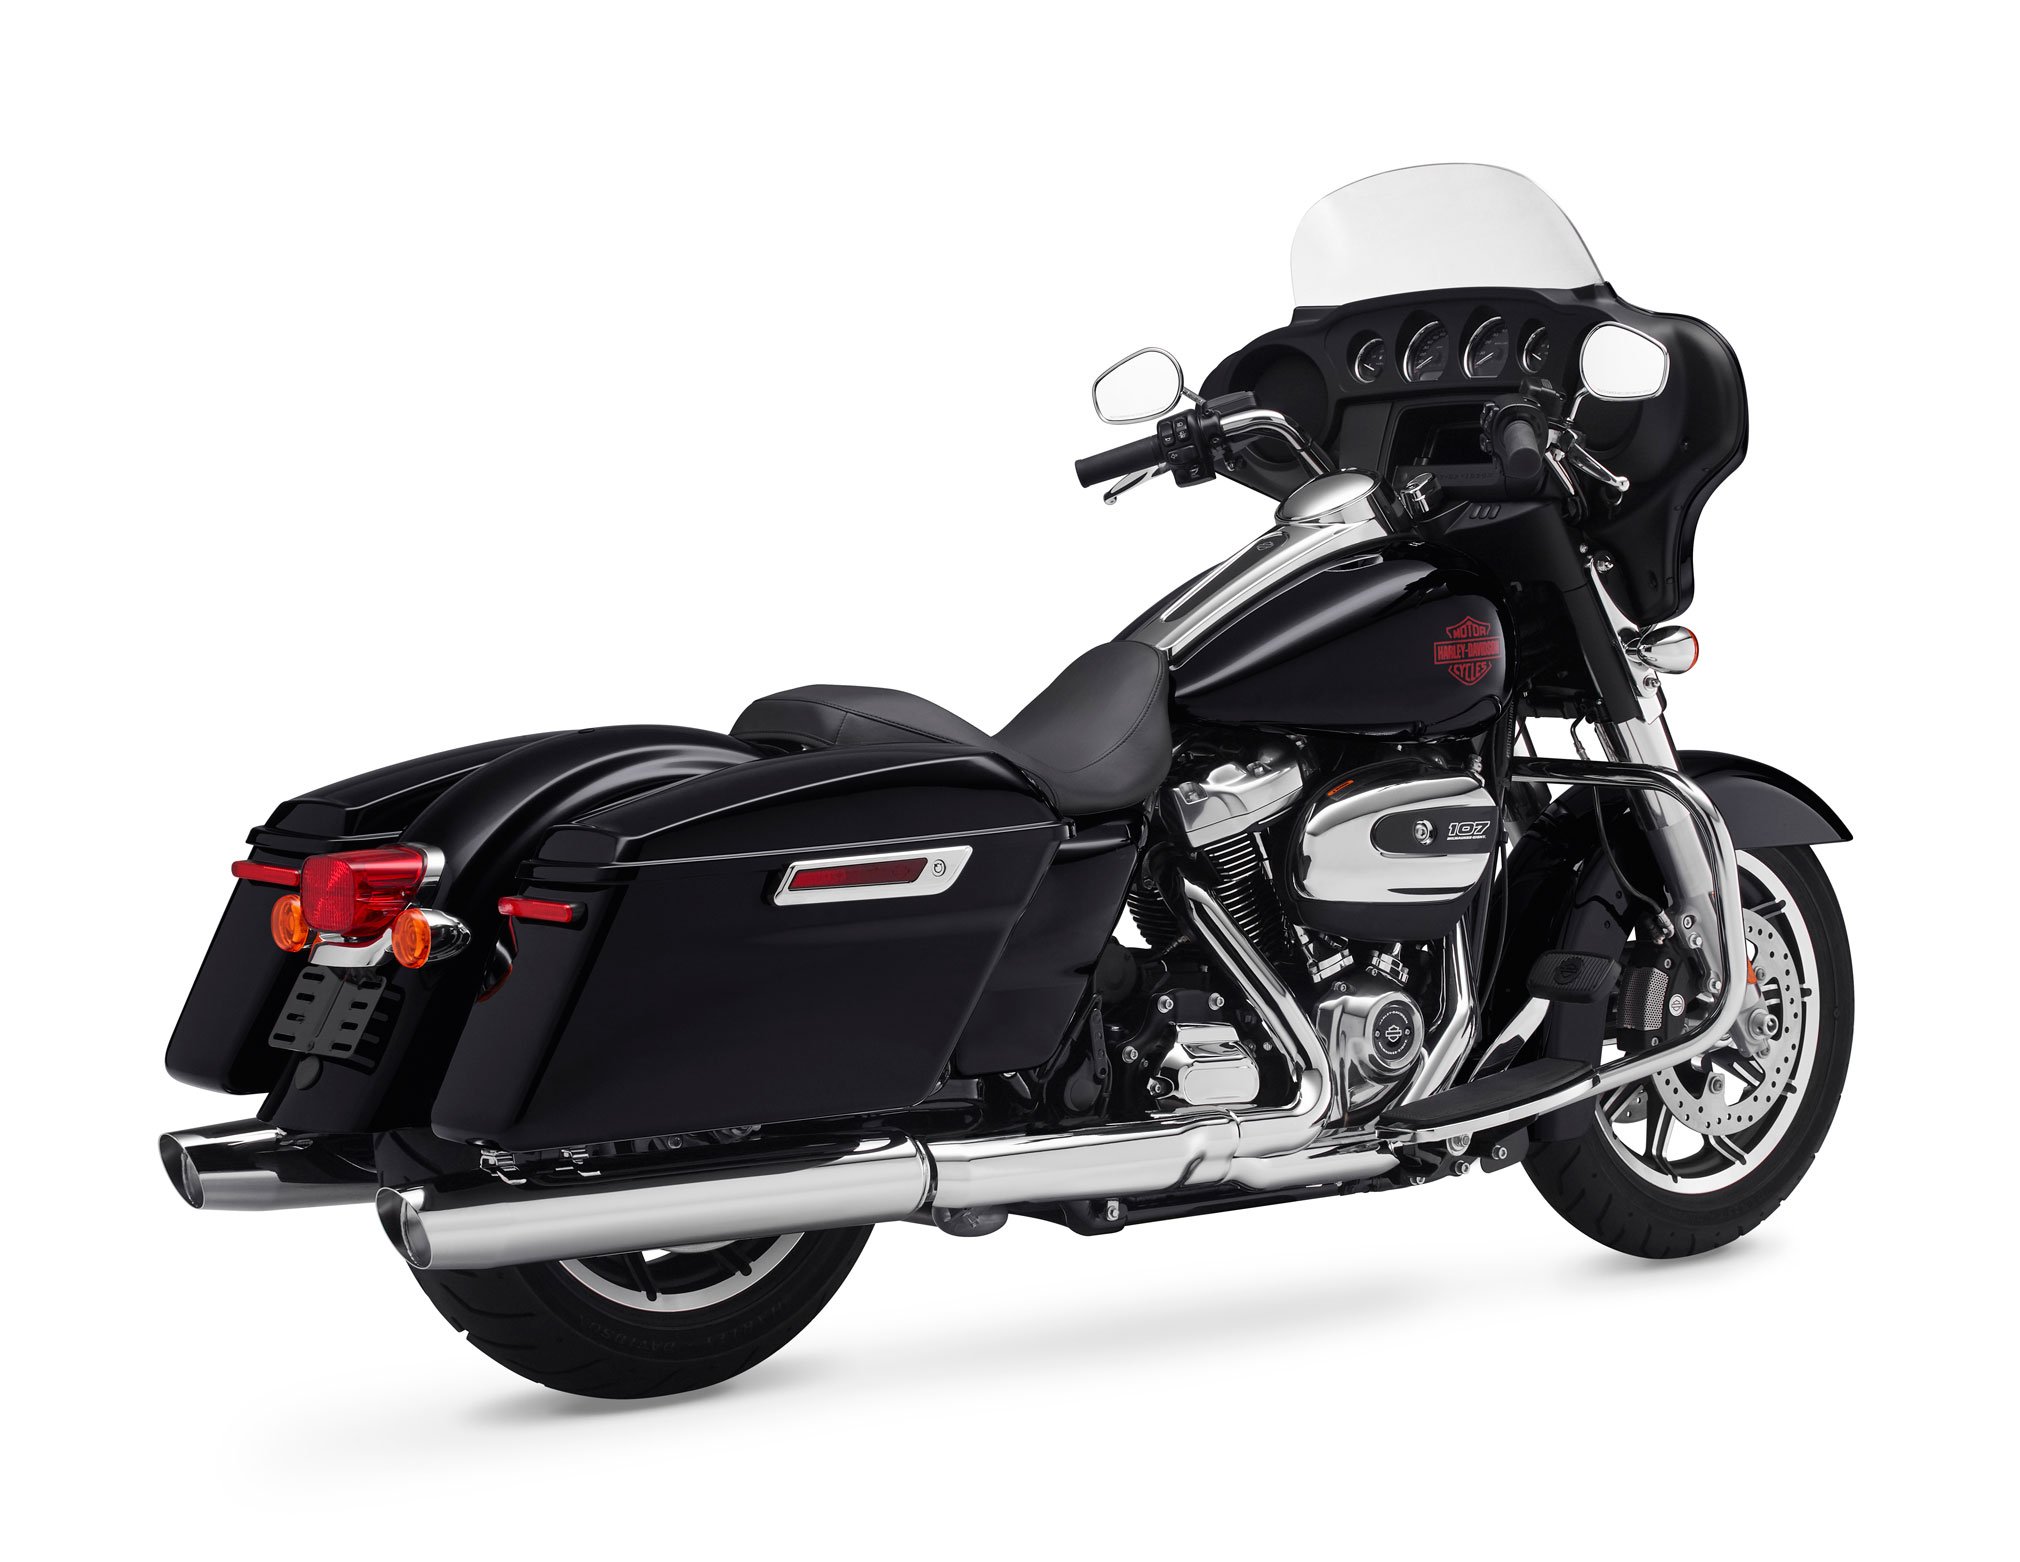 2020 Harley-Davidson Electra Glide Standard Guide • Total ...